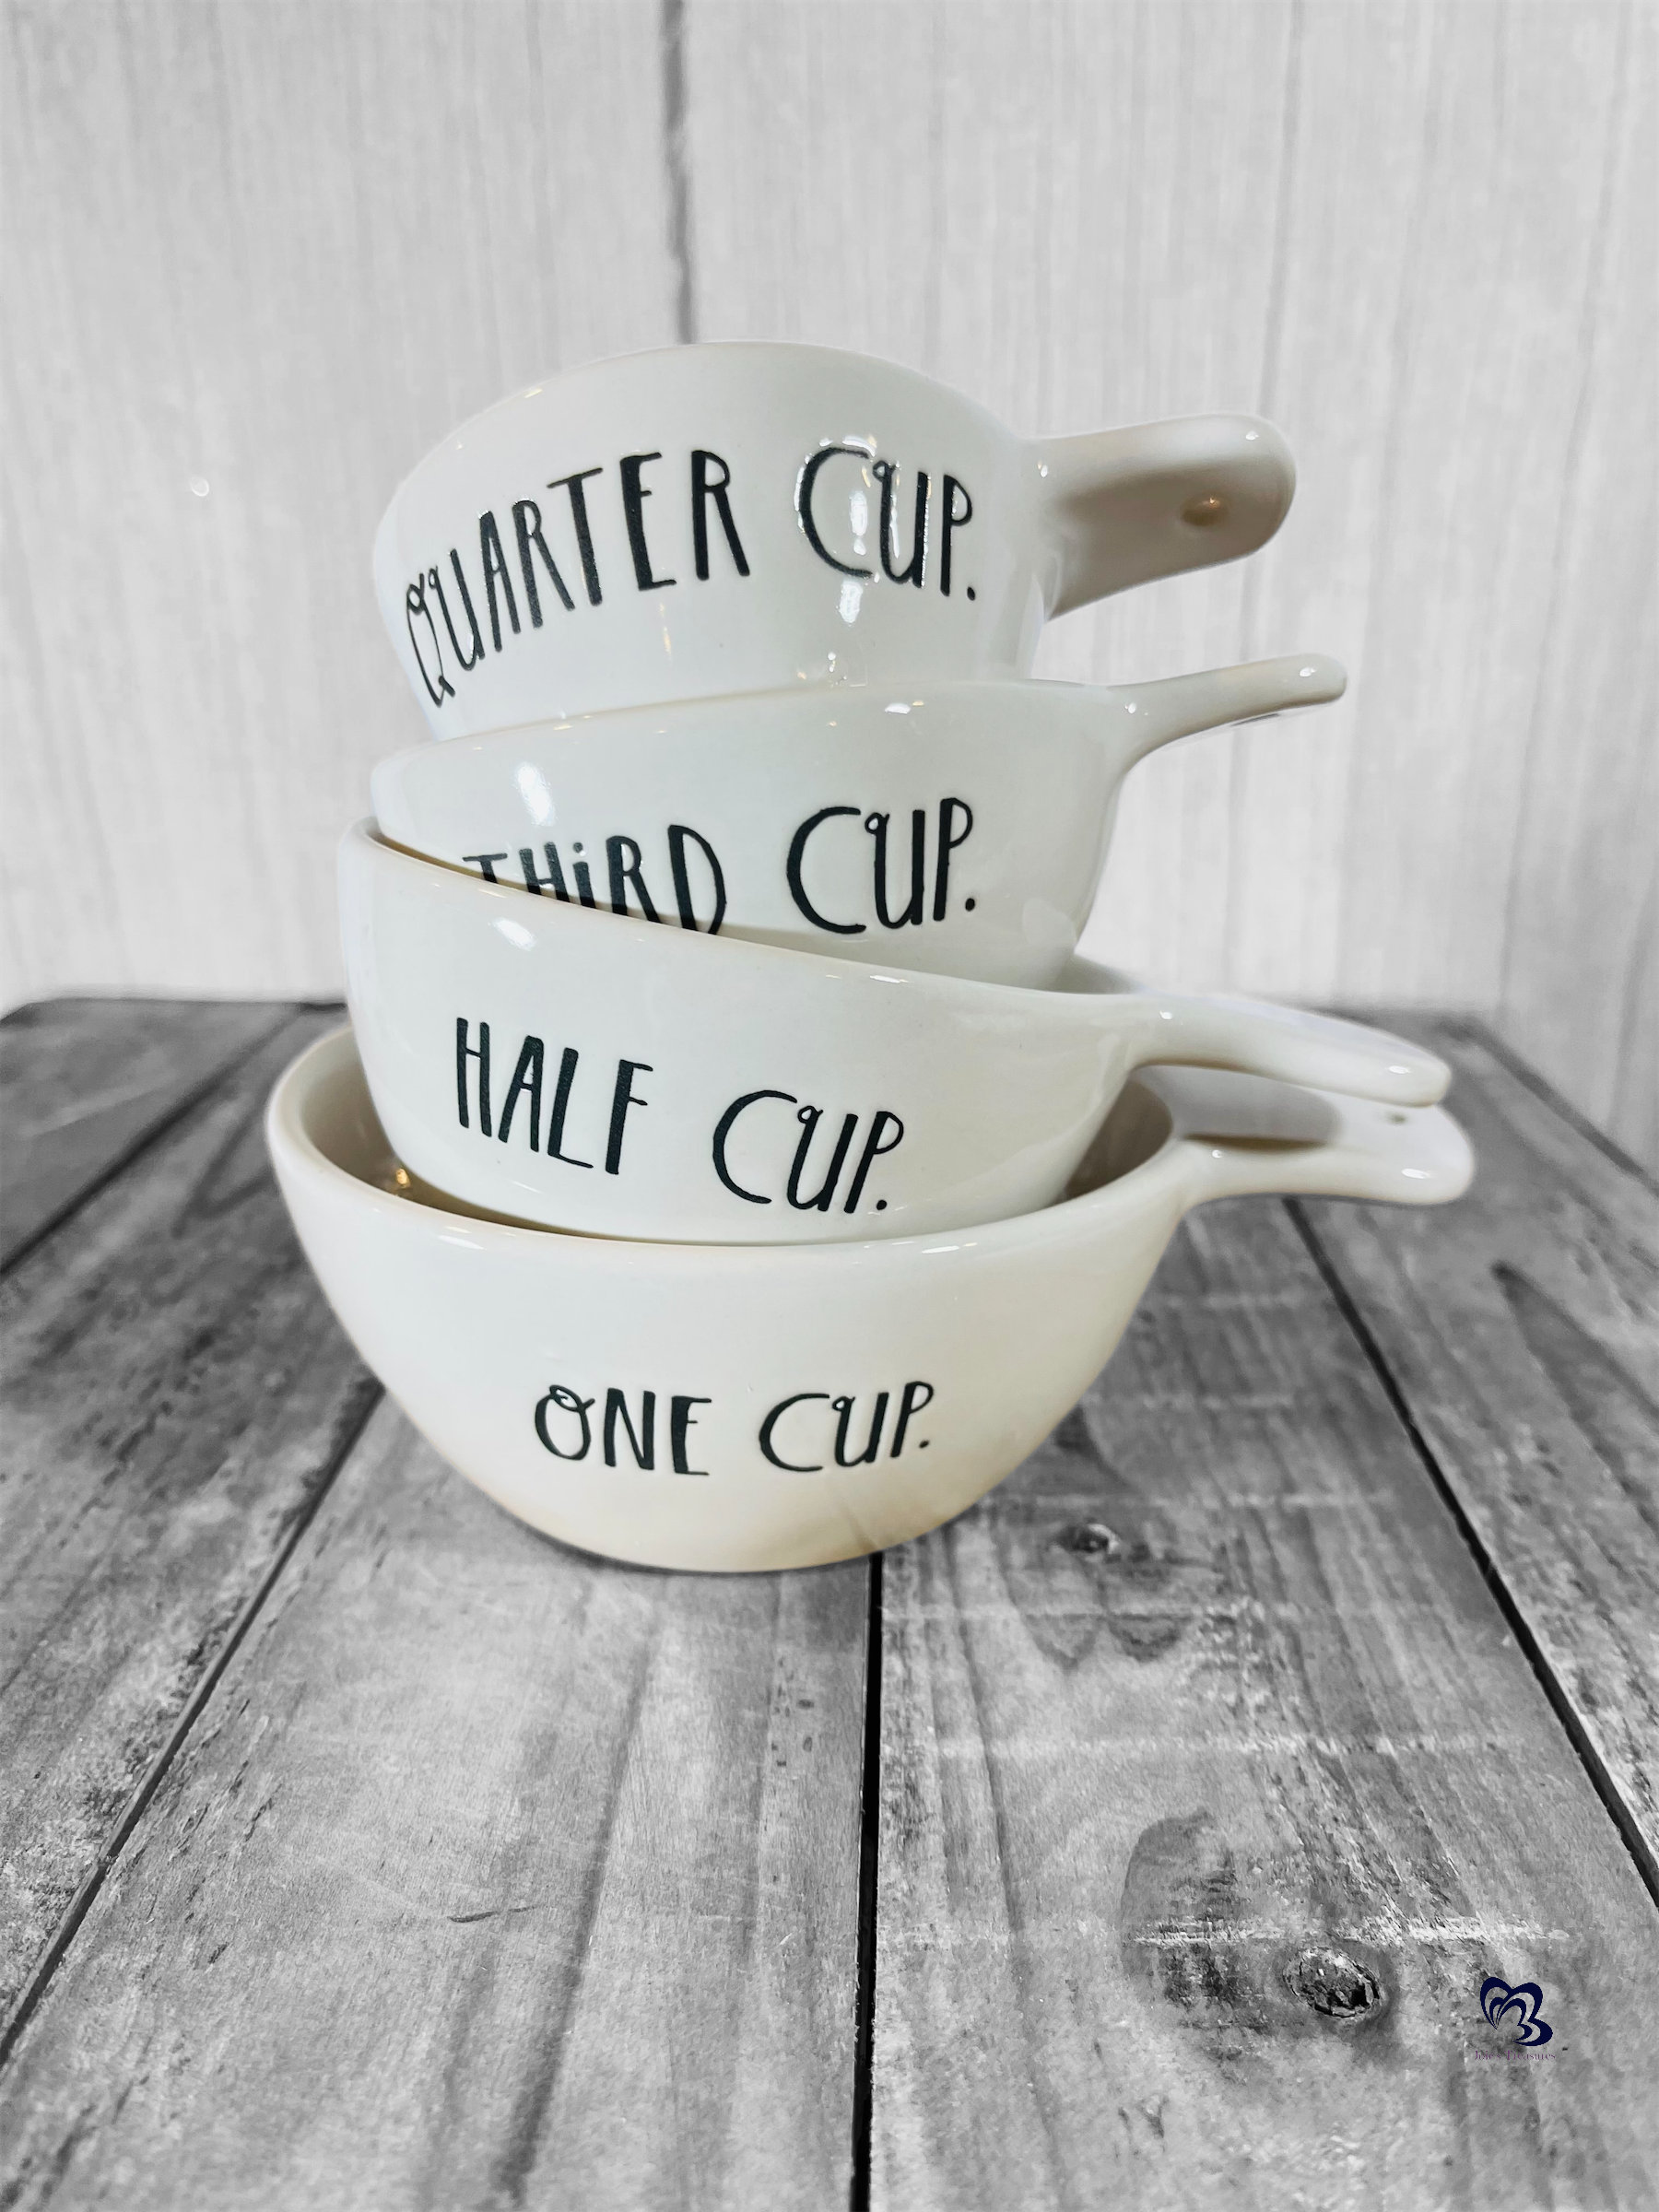 Snowman Ceramic Measuring Cups Set Rae Dunn 